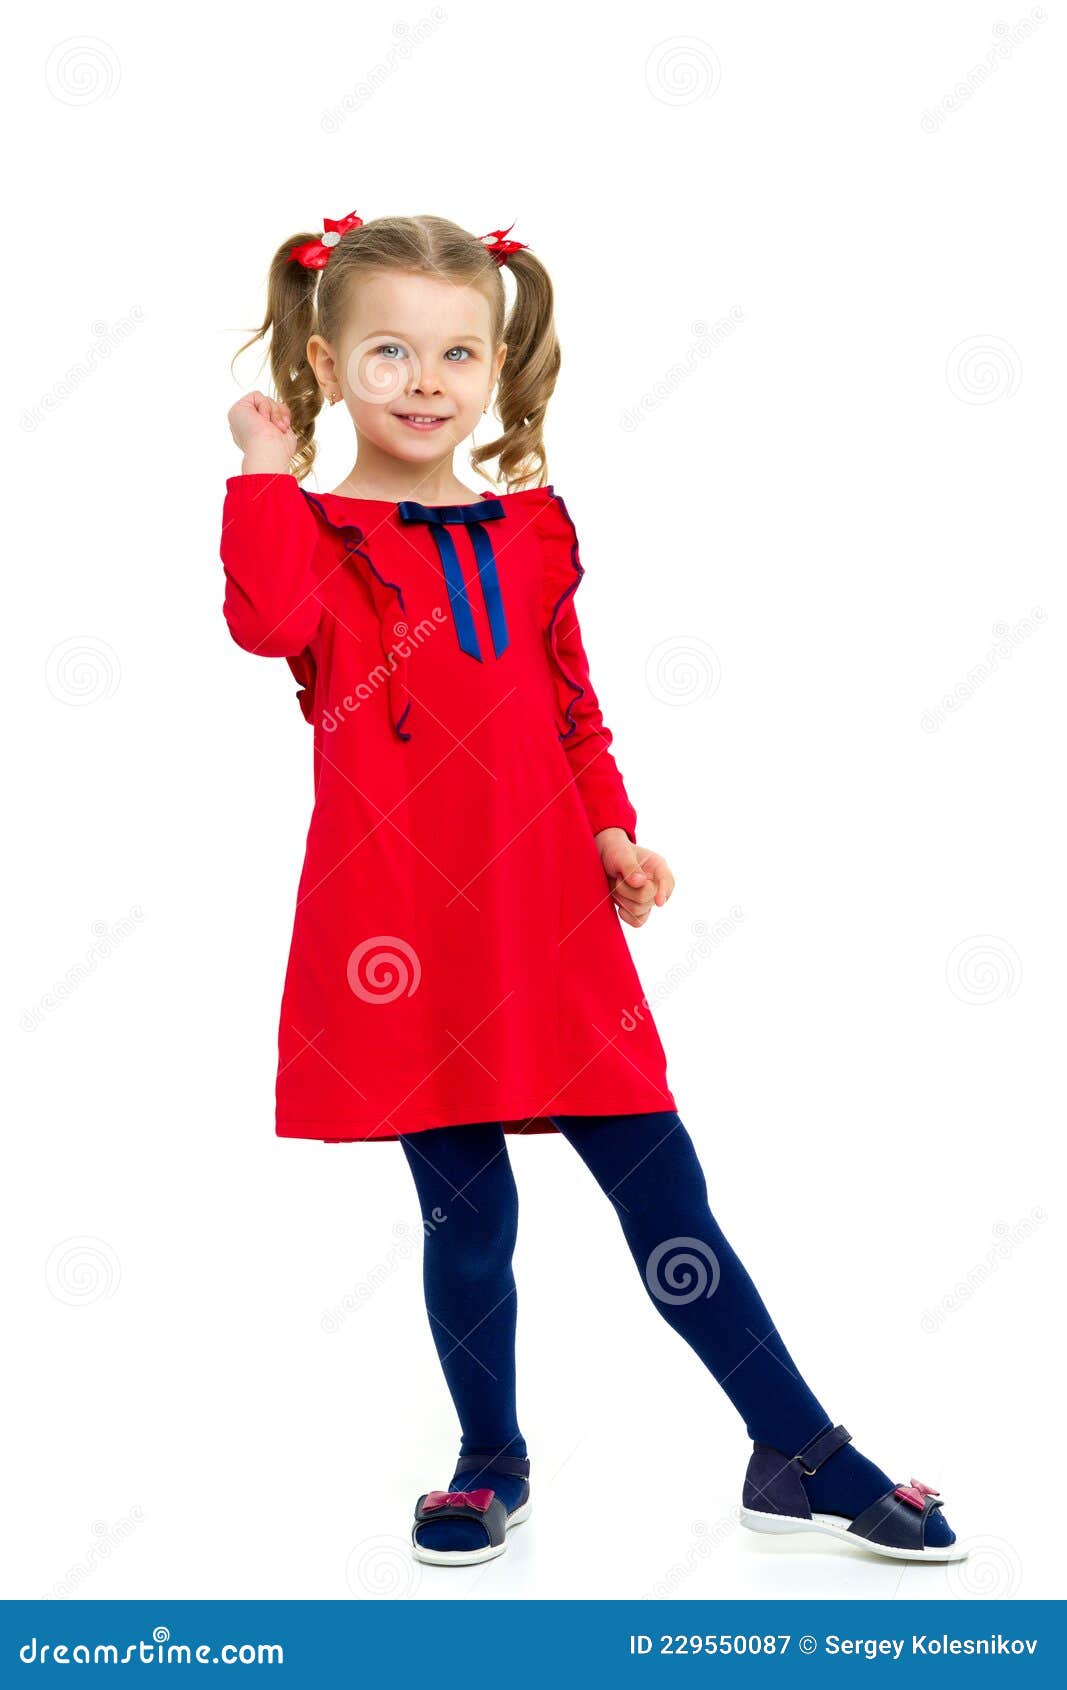 穿着红色长裙翩翩起舞的少女人像图片免费下载_jpg格式_3648像素_编号50434549-千图网